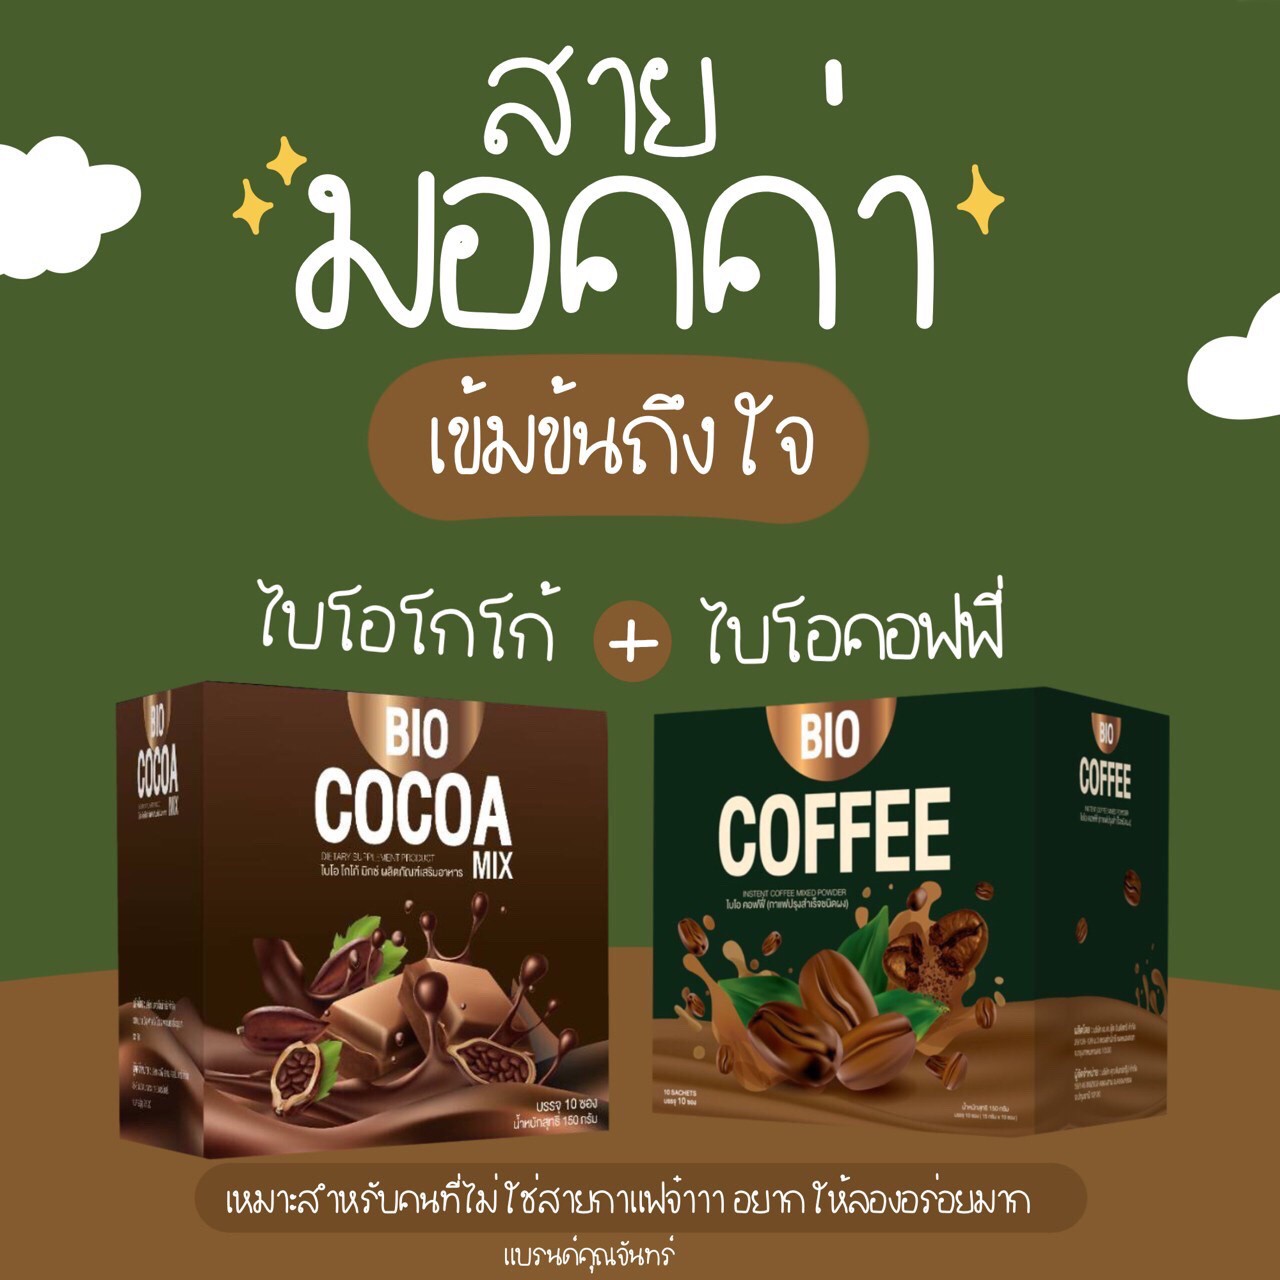 Bio Cocoa mix +Bio Coffee พร้อมส่ง ⚡️รวม2กล่องแถมฟรีกระบอกน้ำ คุณจันทร์ khunchan